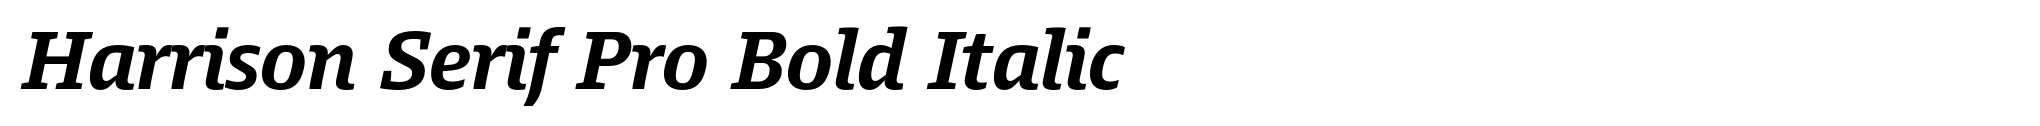 Harrison Serif Pro Bold Italic image